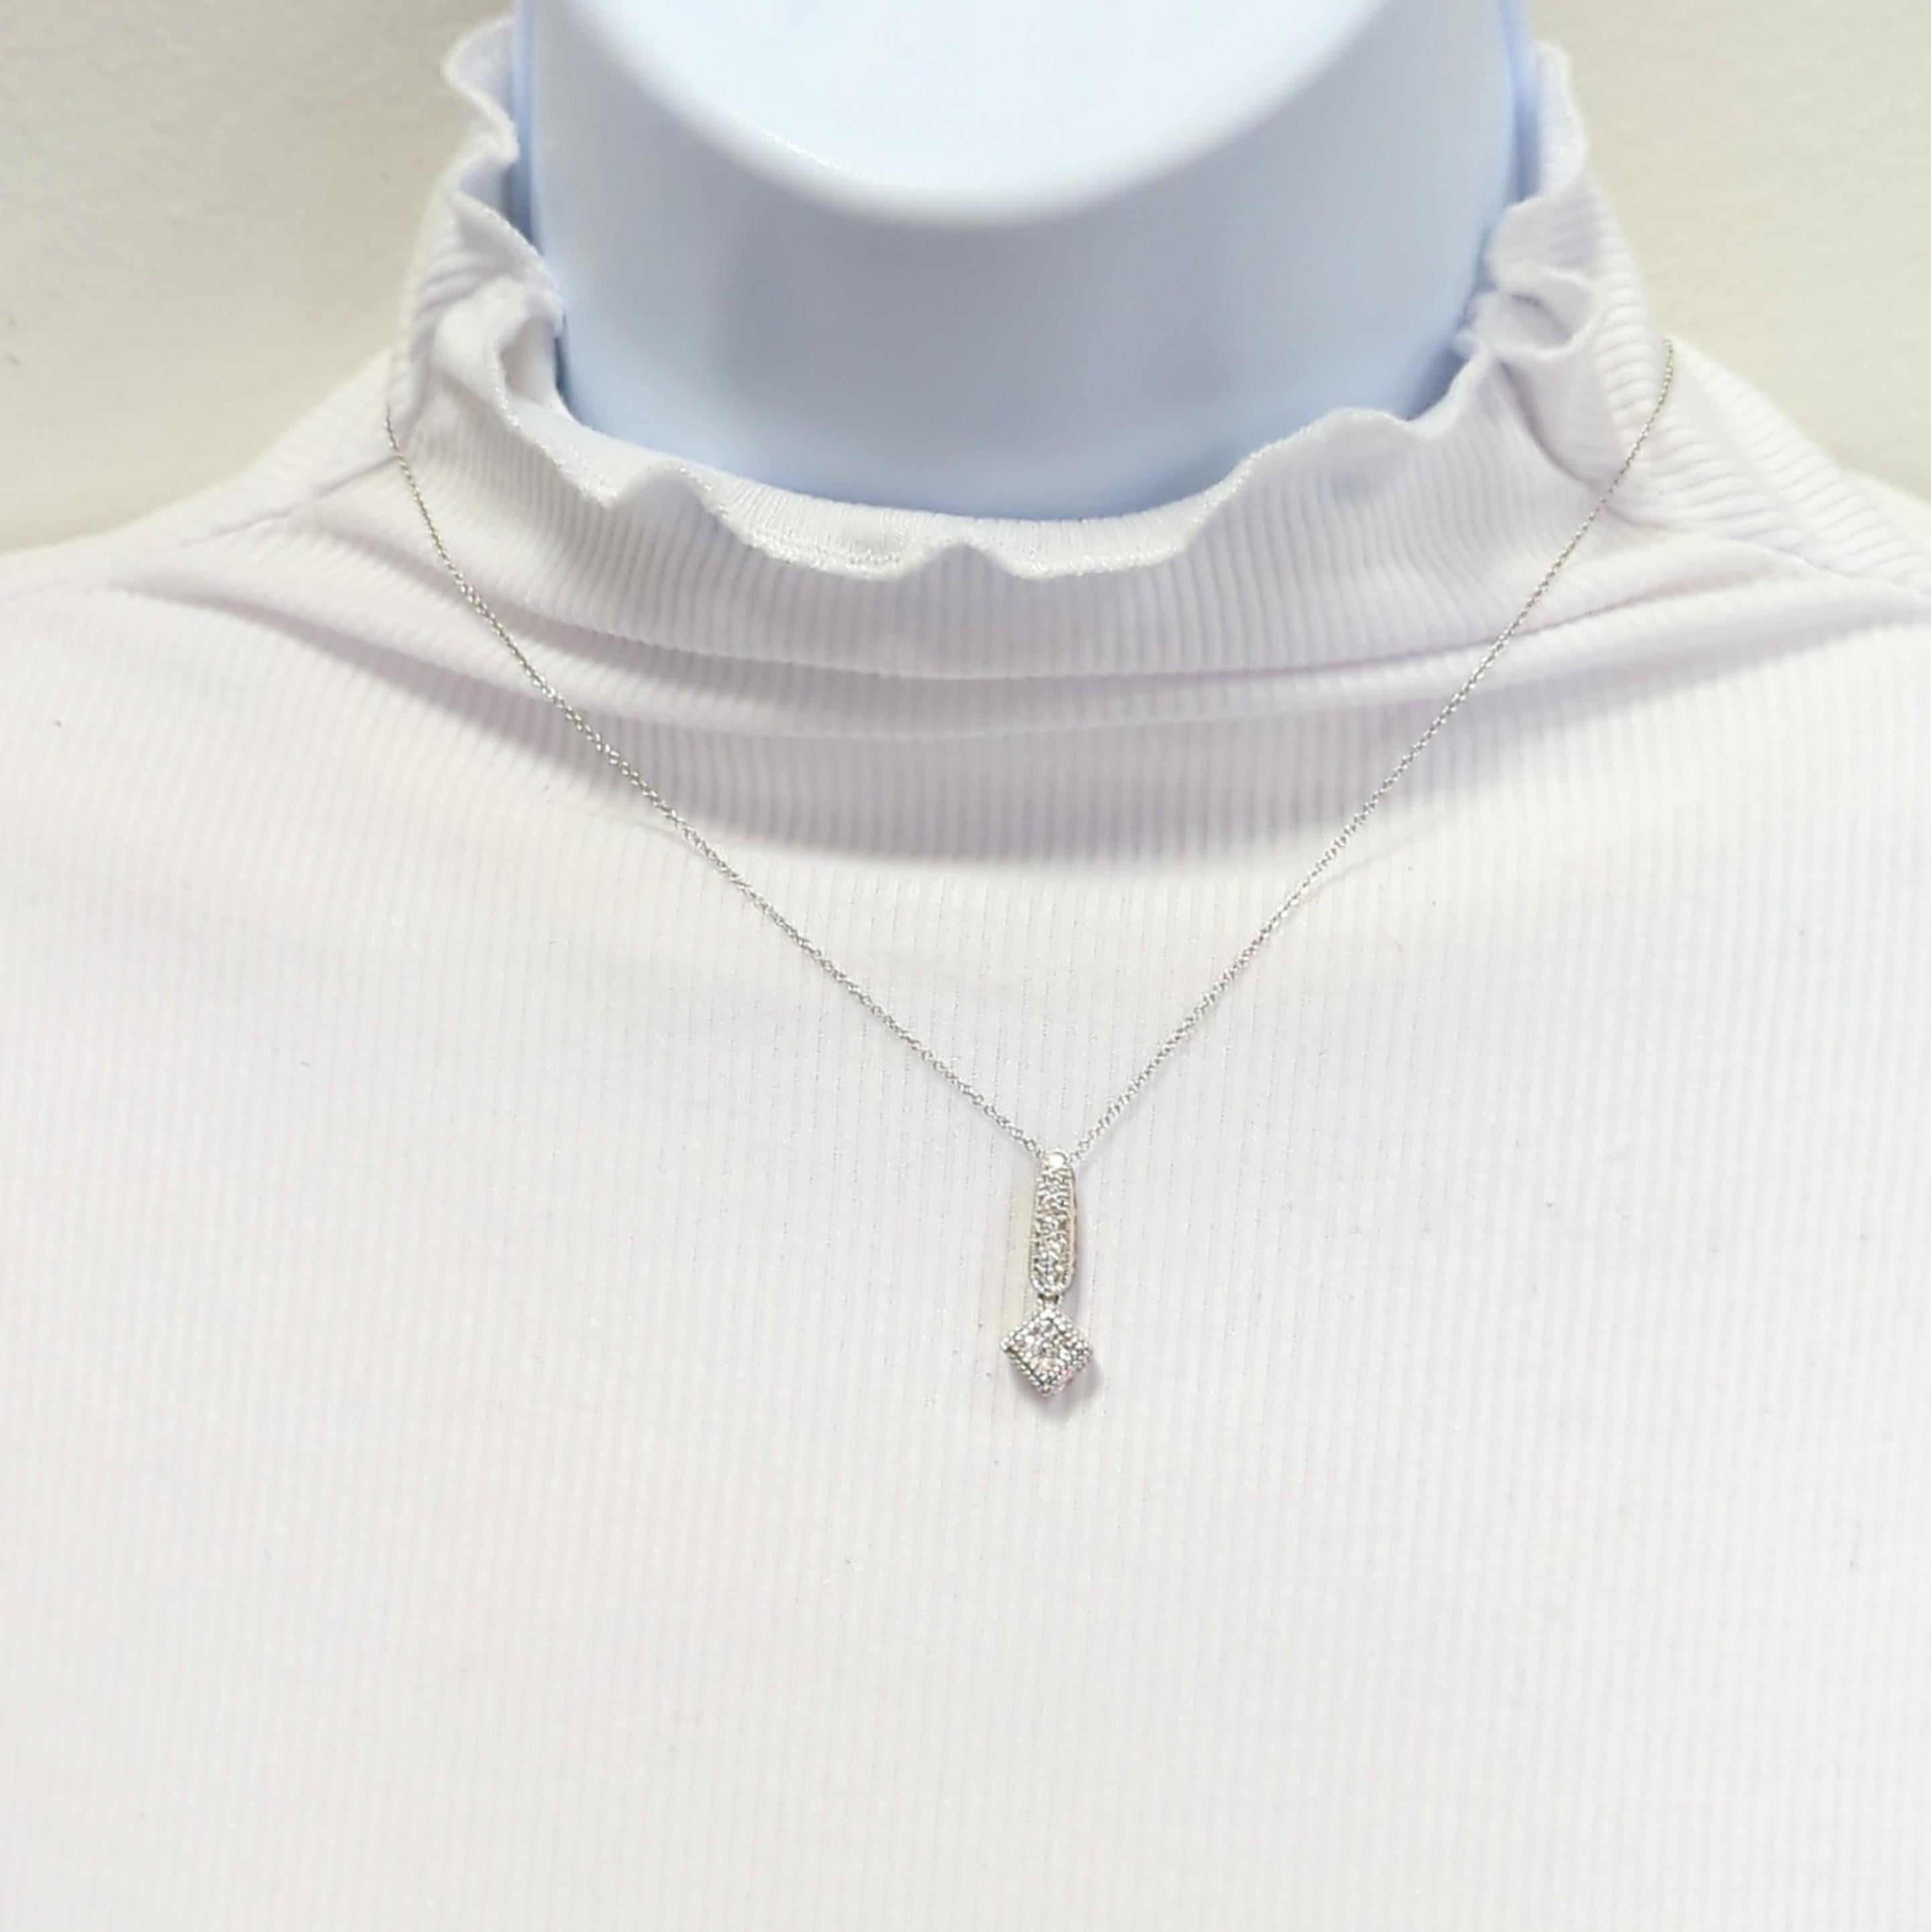 Schöne Anhänger-Halskette mit 0,28 ct. runden Diamanten, die hell, weiß und von guter Qualität sind.